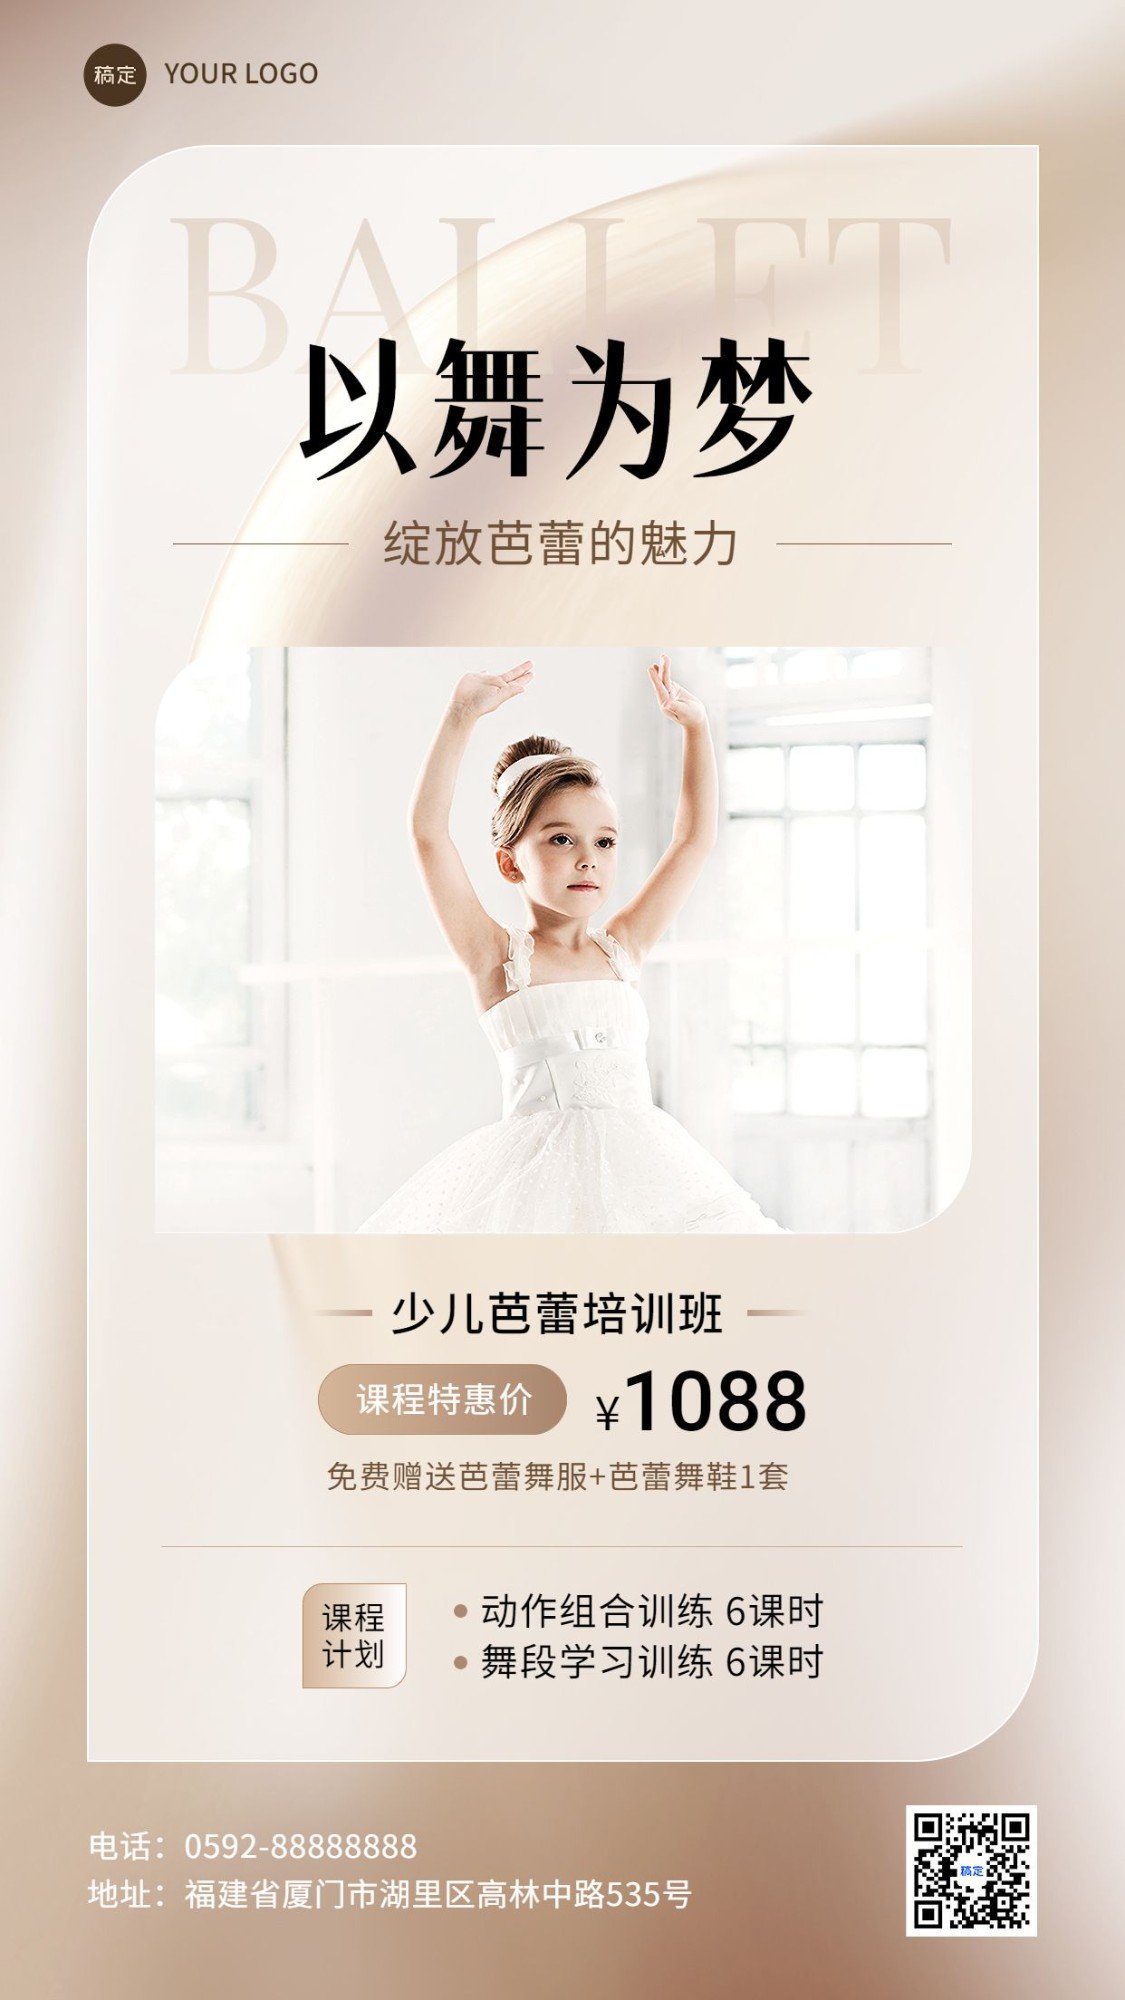 少儿芭蕾兴趣培训机构招生引流课程宣传手机海报